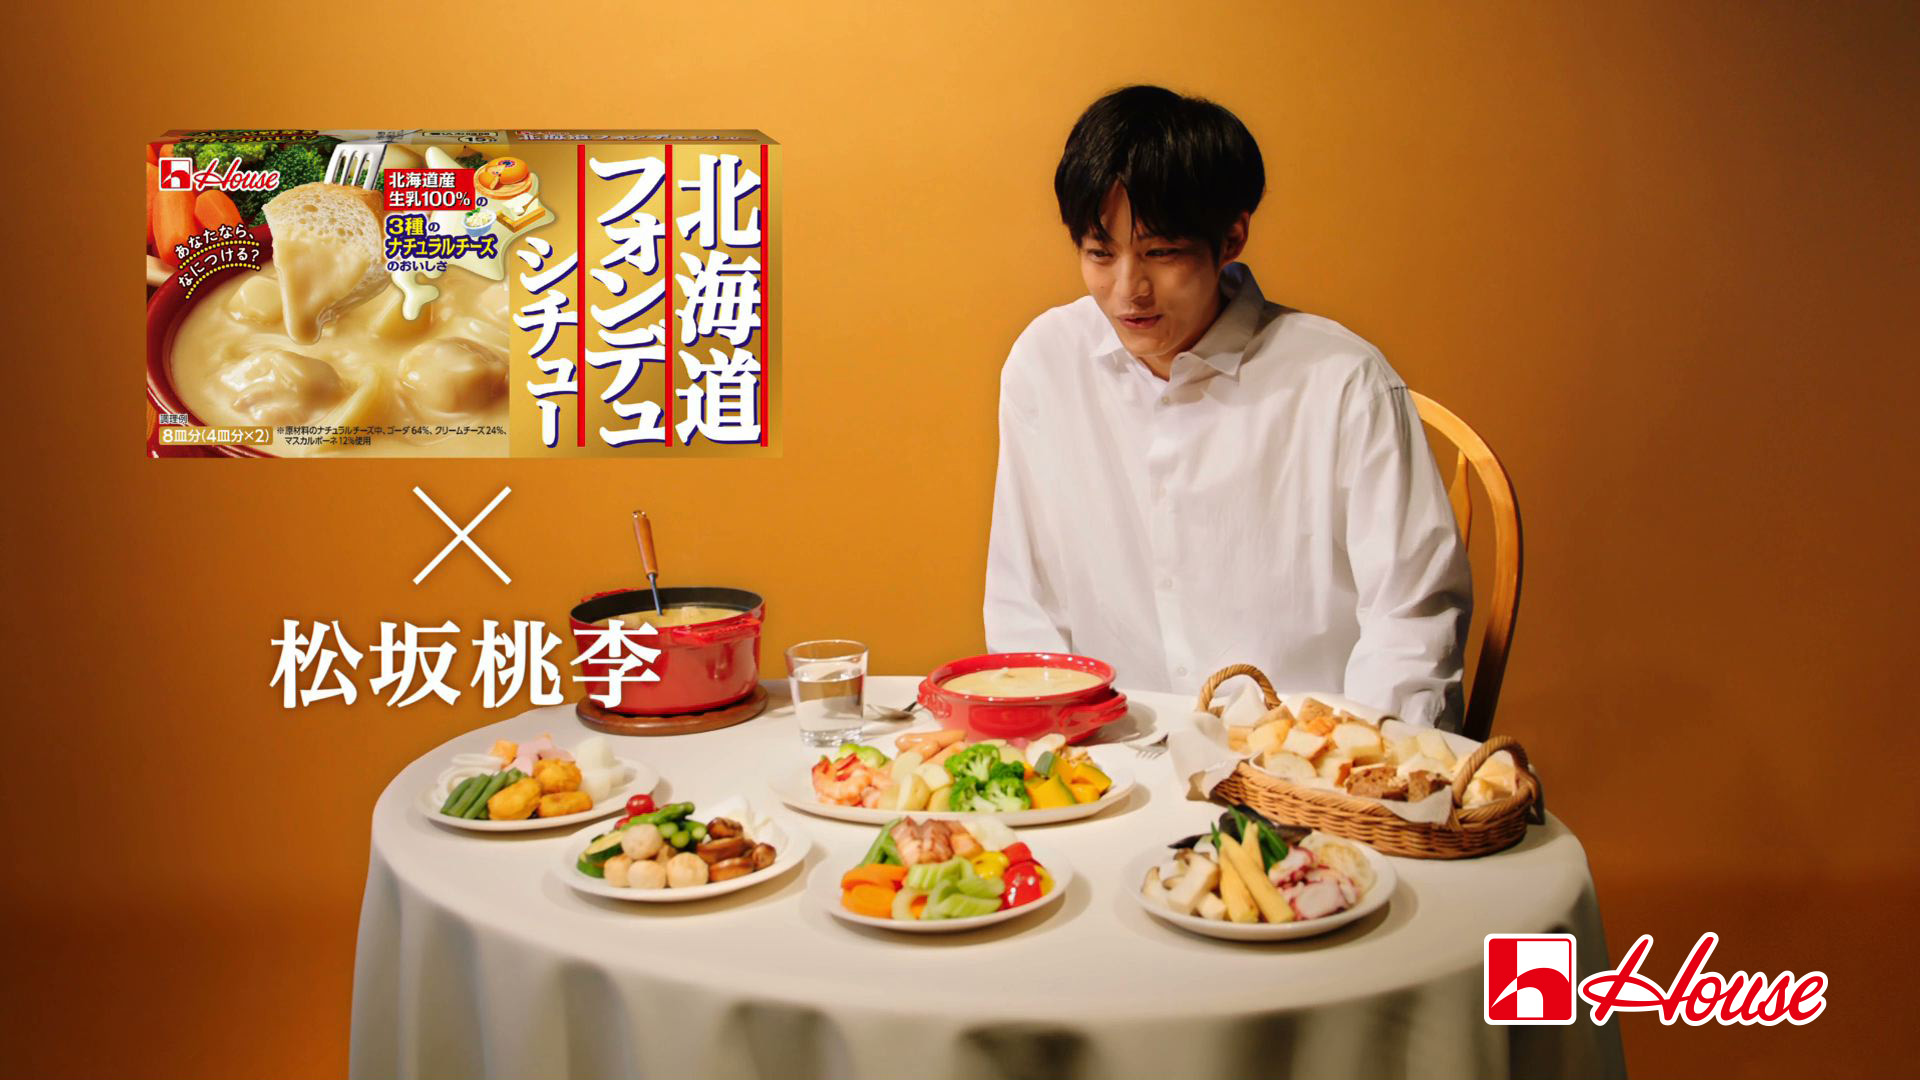 松坂桃李さん出演 北海道フォンデュシチュー初のtvcm が9月7日よりオンエア Twitterキャンペーン つけ具ランプリ も同時開催 ハウス食品グループ本社株式会社のプレスリリース